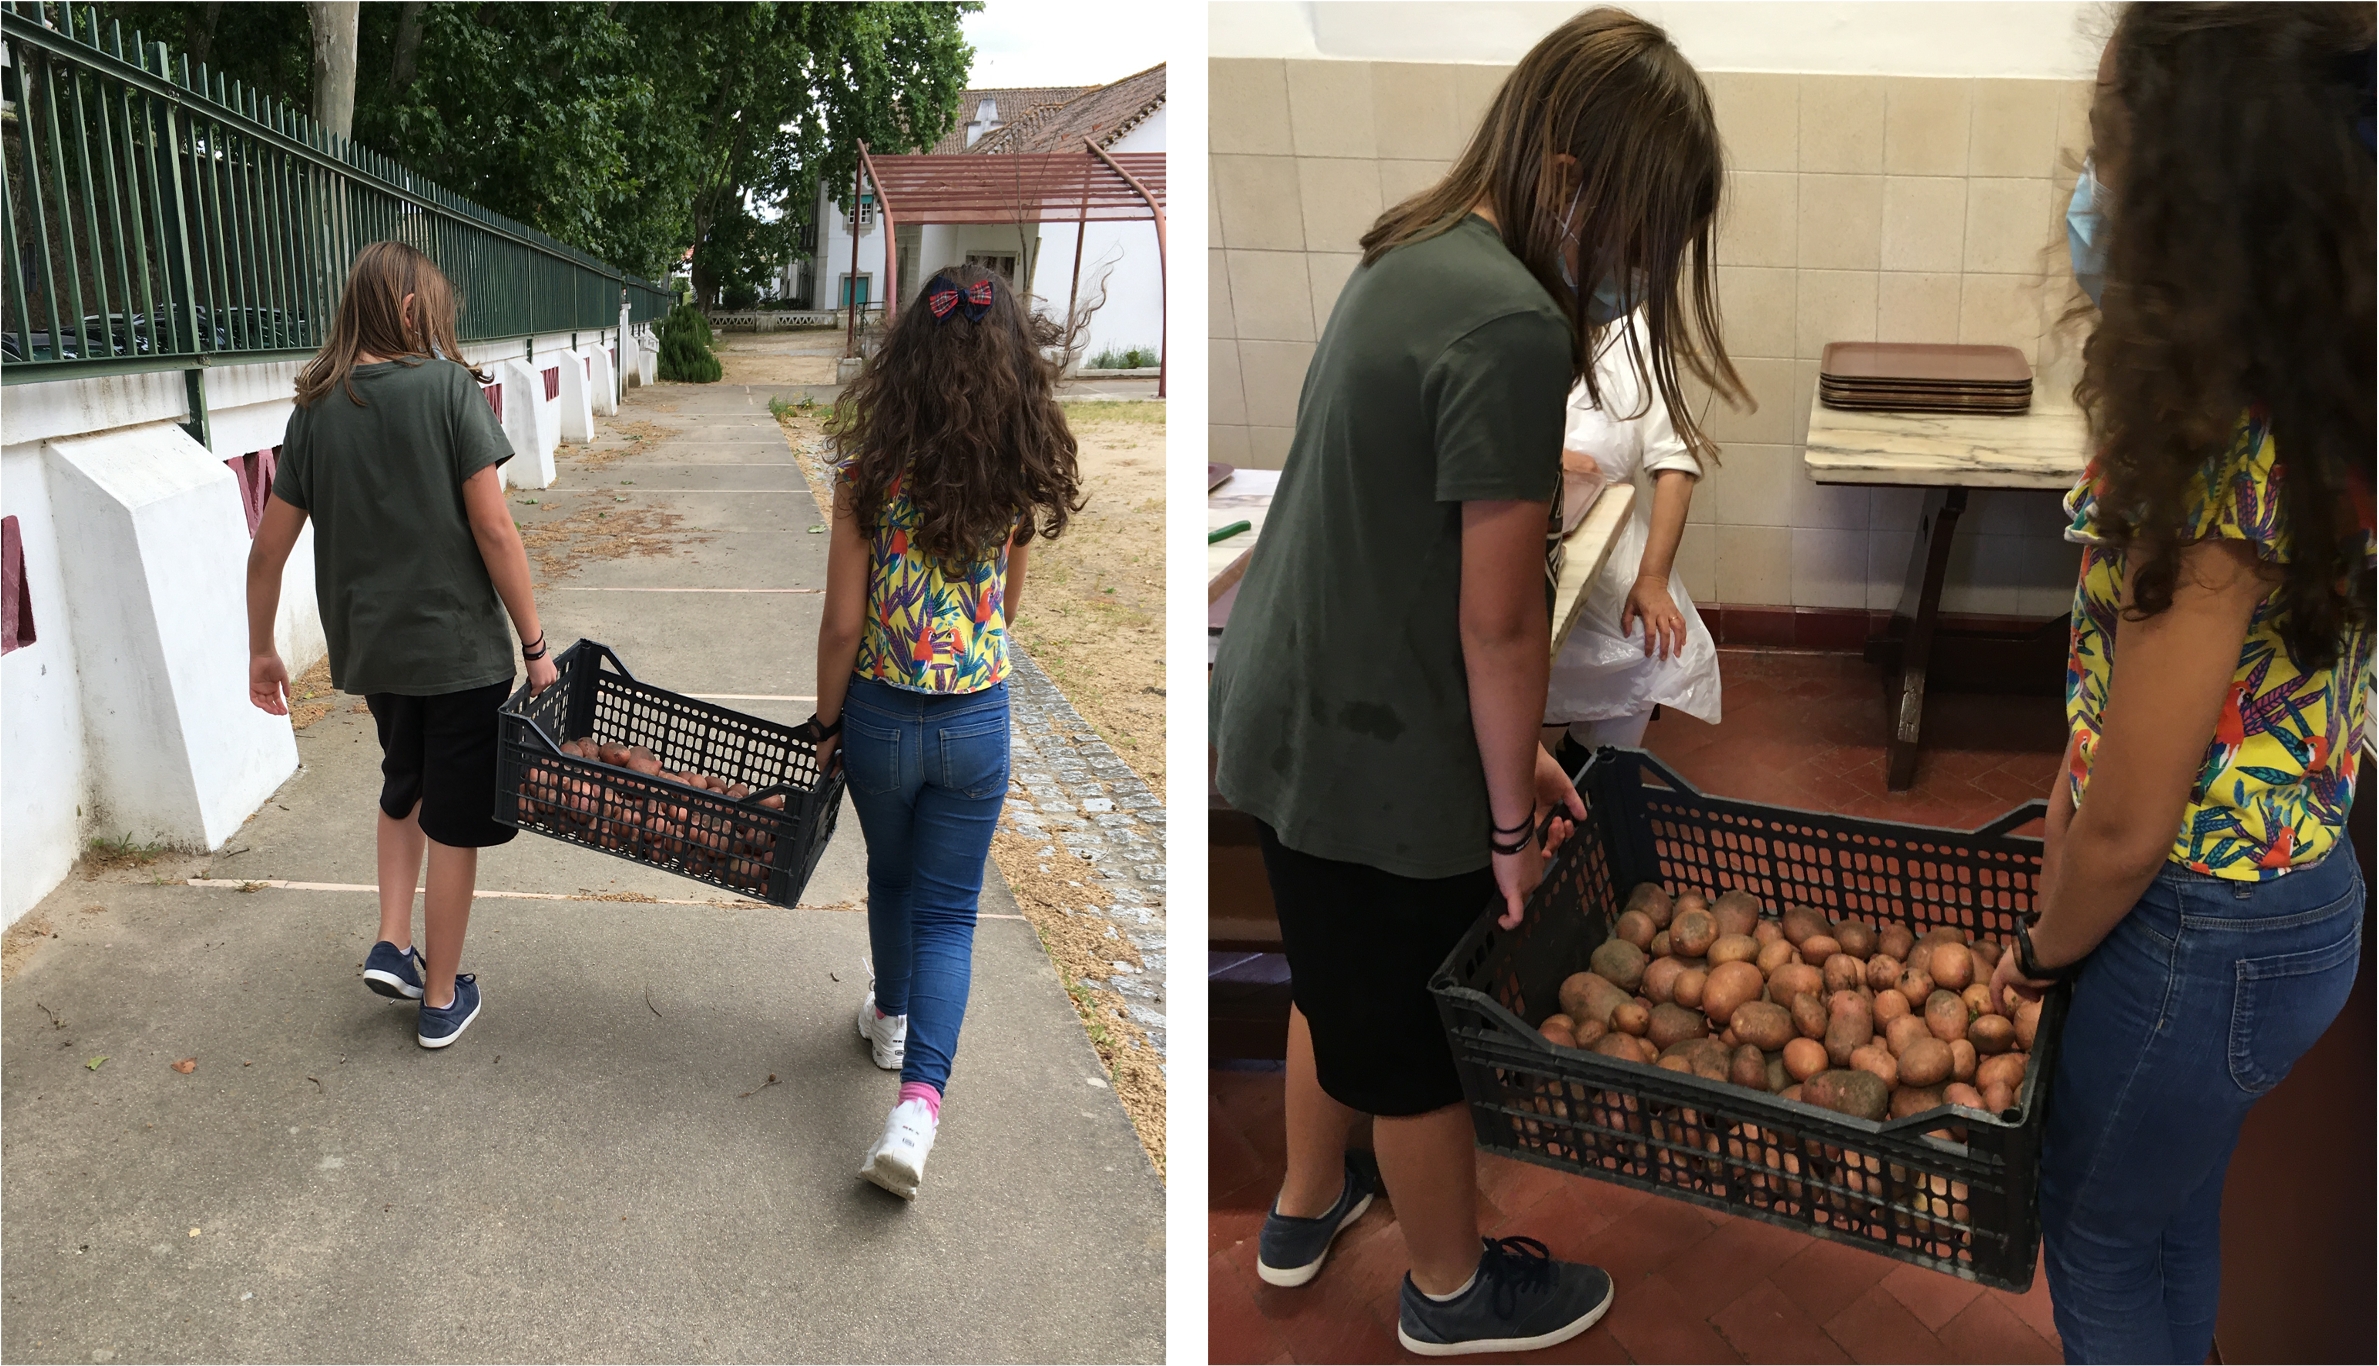 Os alunos do 4º ano levaram a caixa com as batatas para a cozinha da escola para serem utilizadas na confeção das refeições servidas no refeitório.